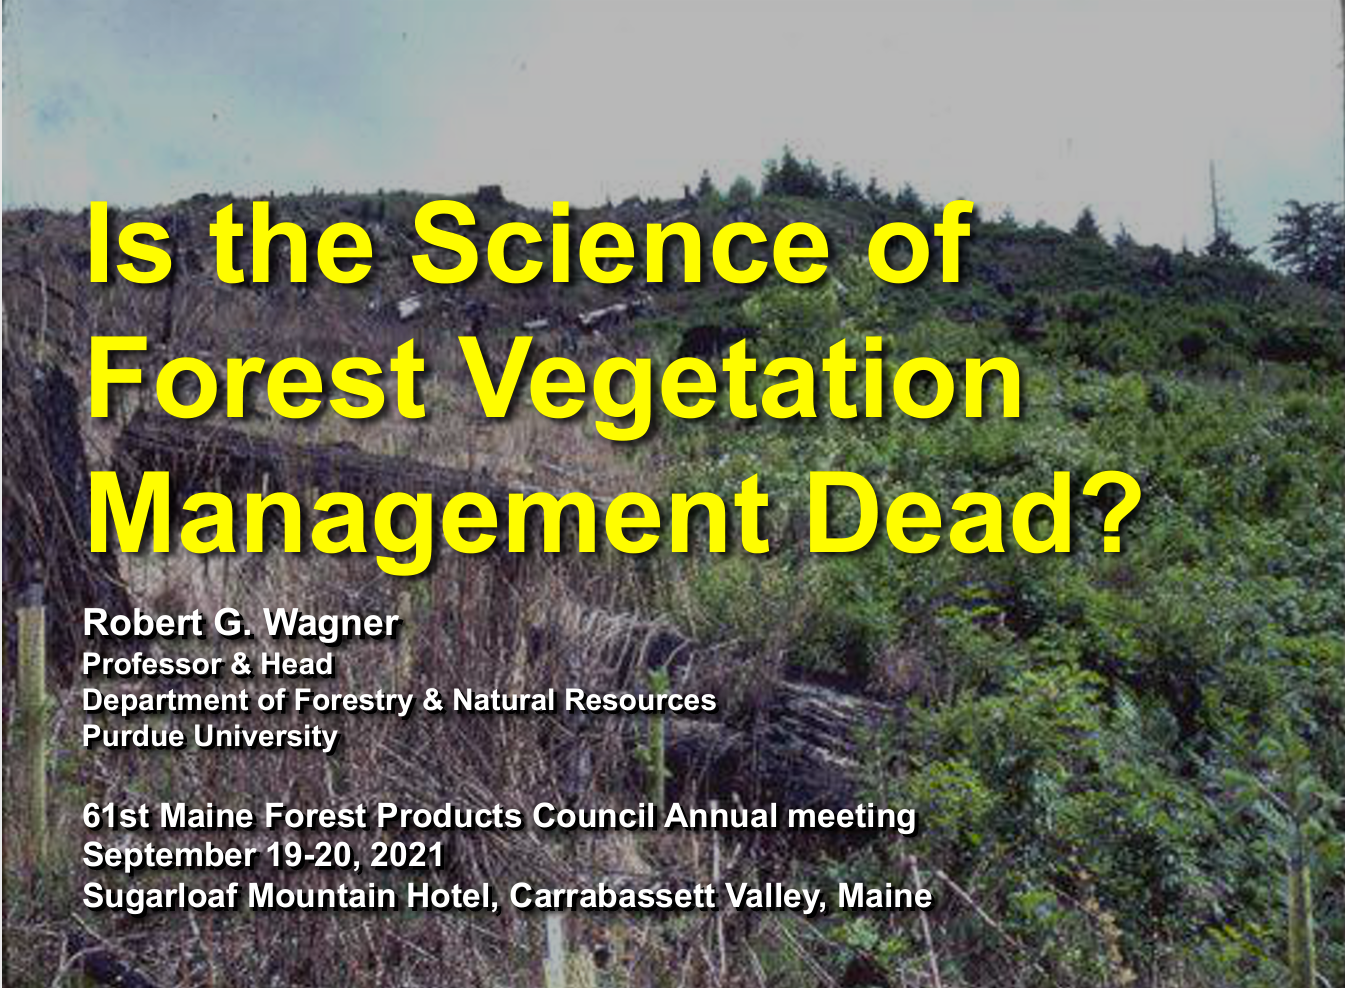 Science of forest vegetation